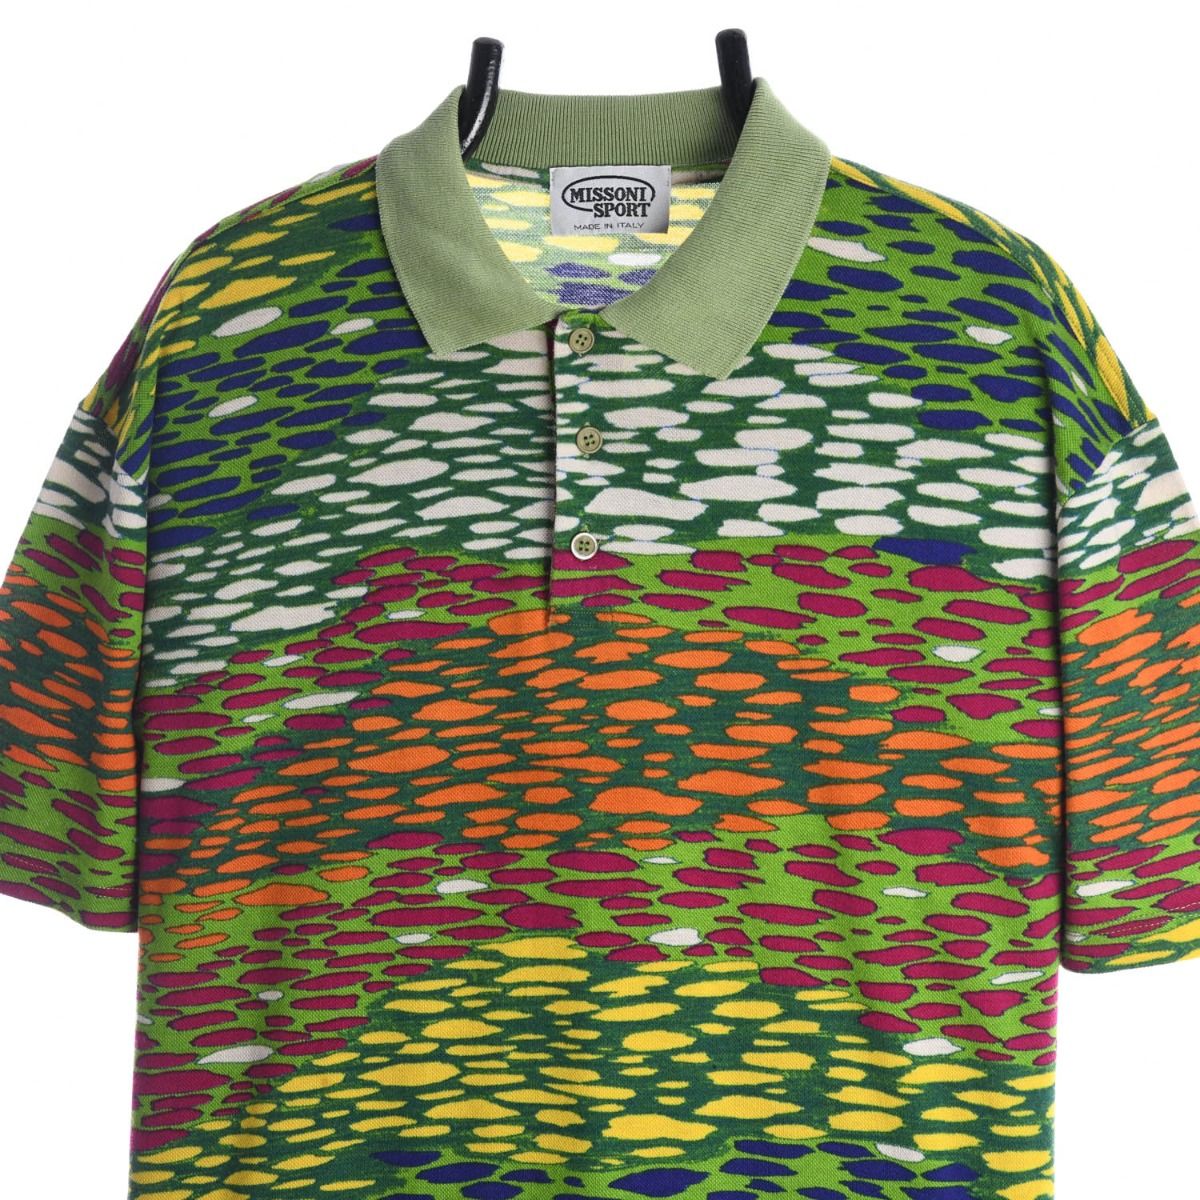 Missoni Sport 1990s Polo Shirt